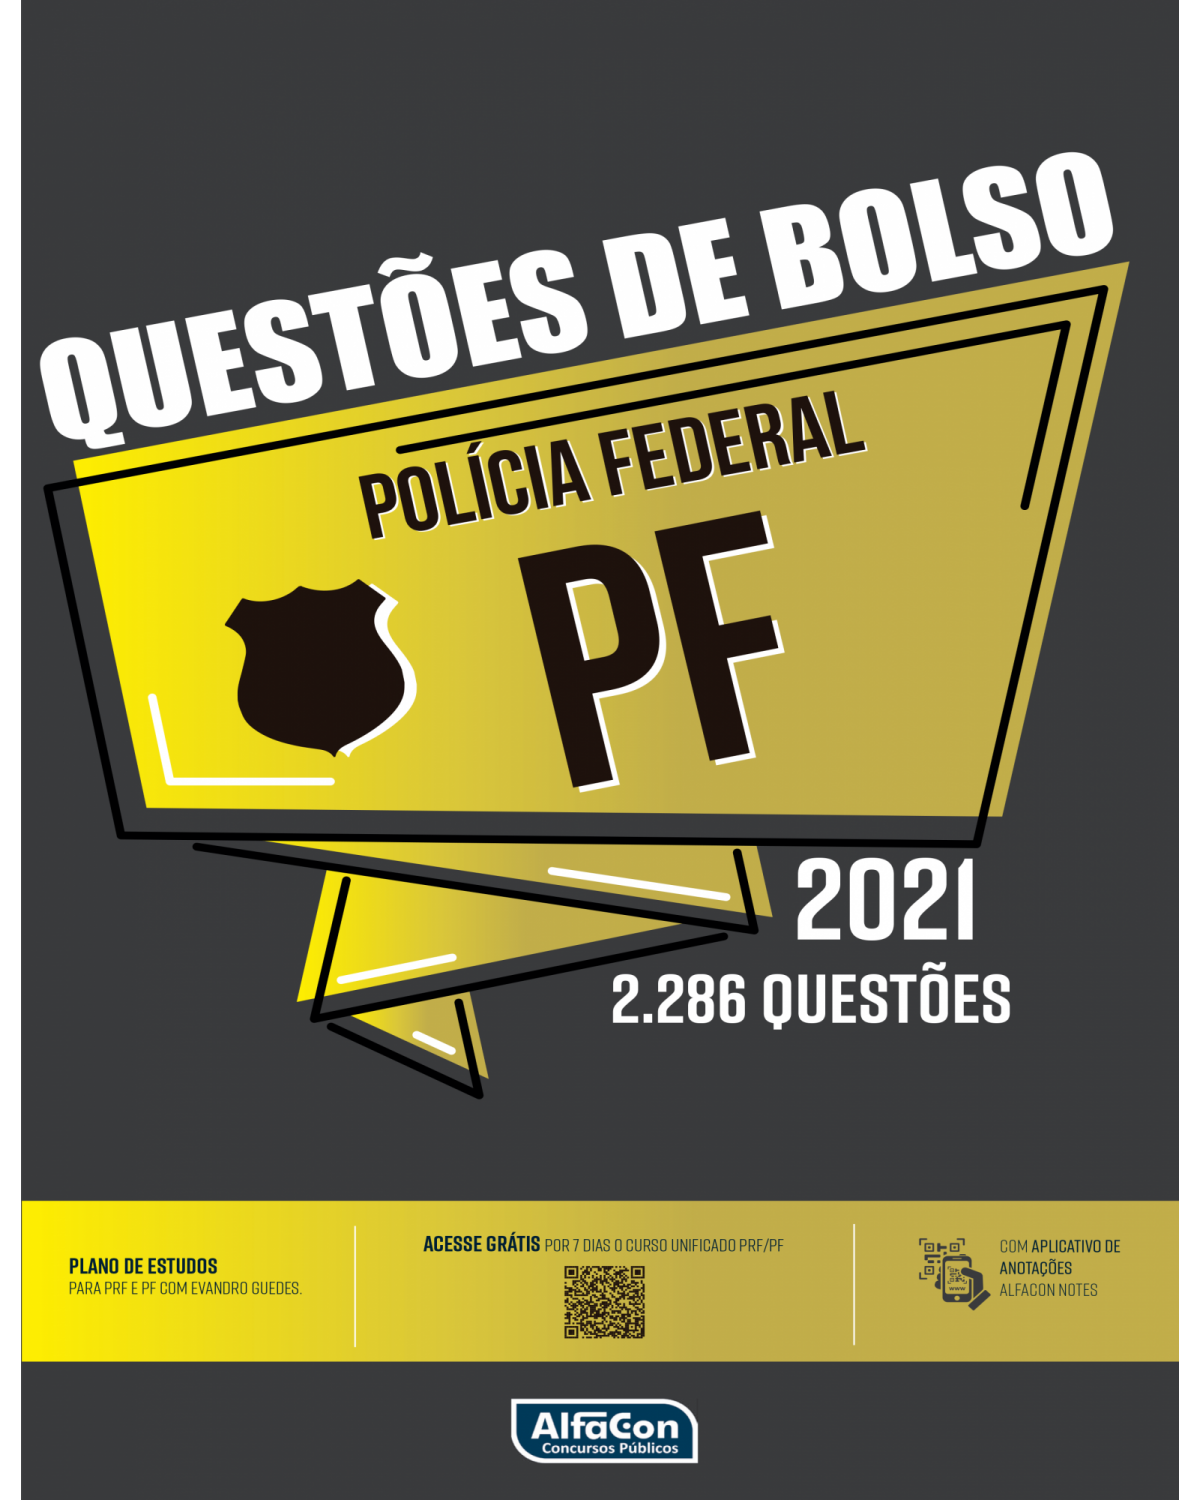 Questões de bolso - Polícia Federal - 1ª Edição | 2021